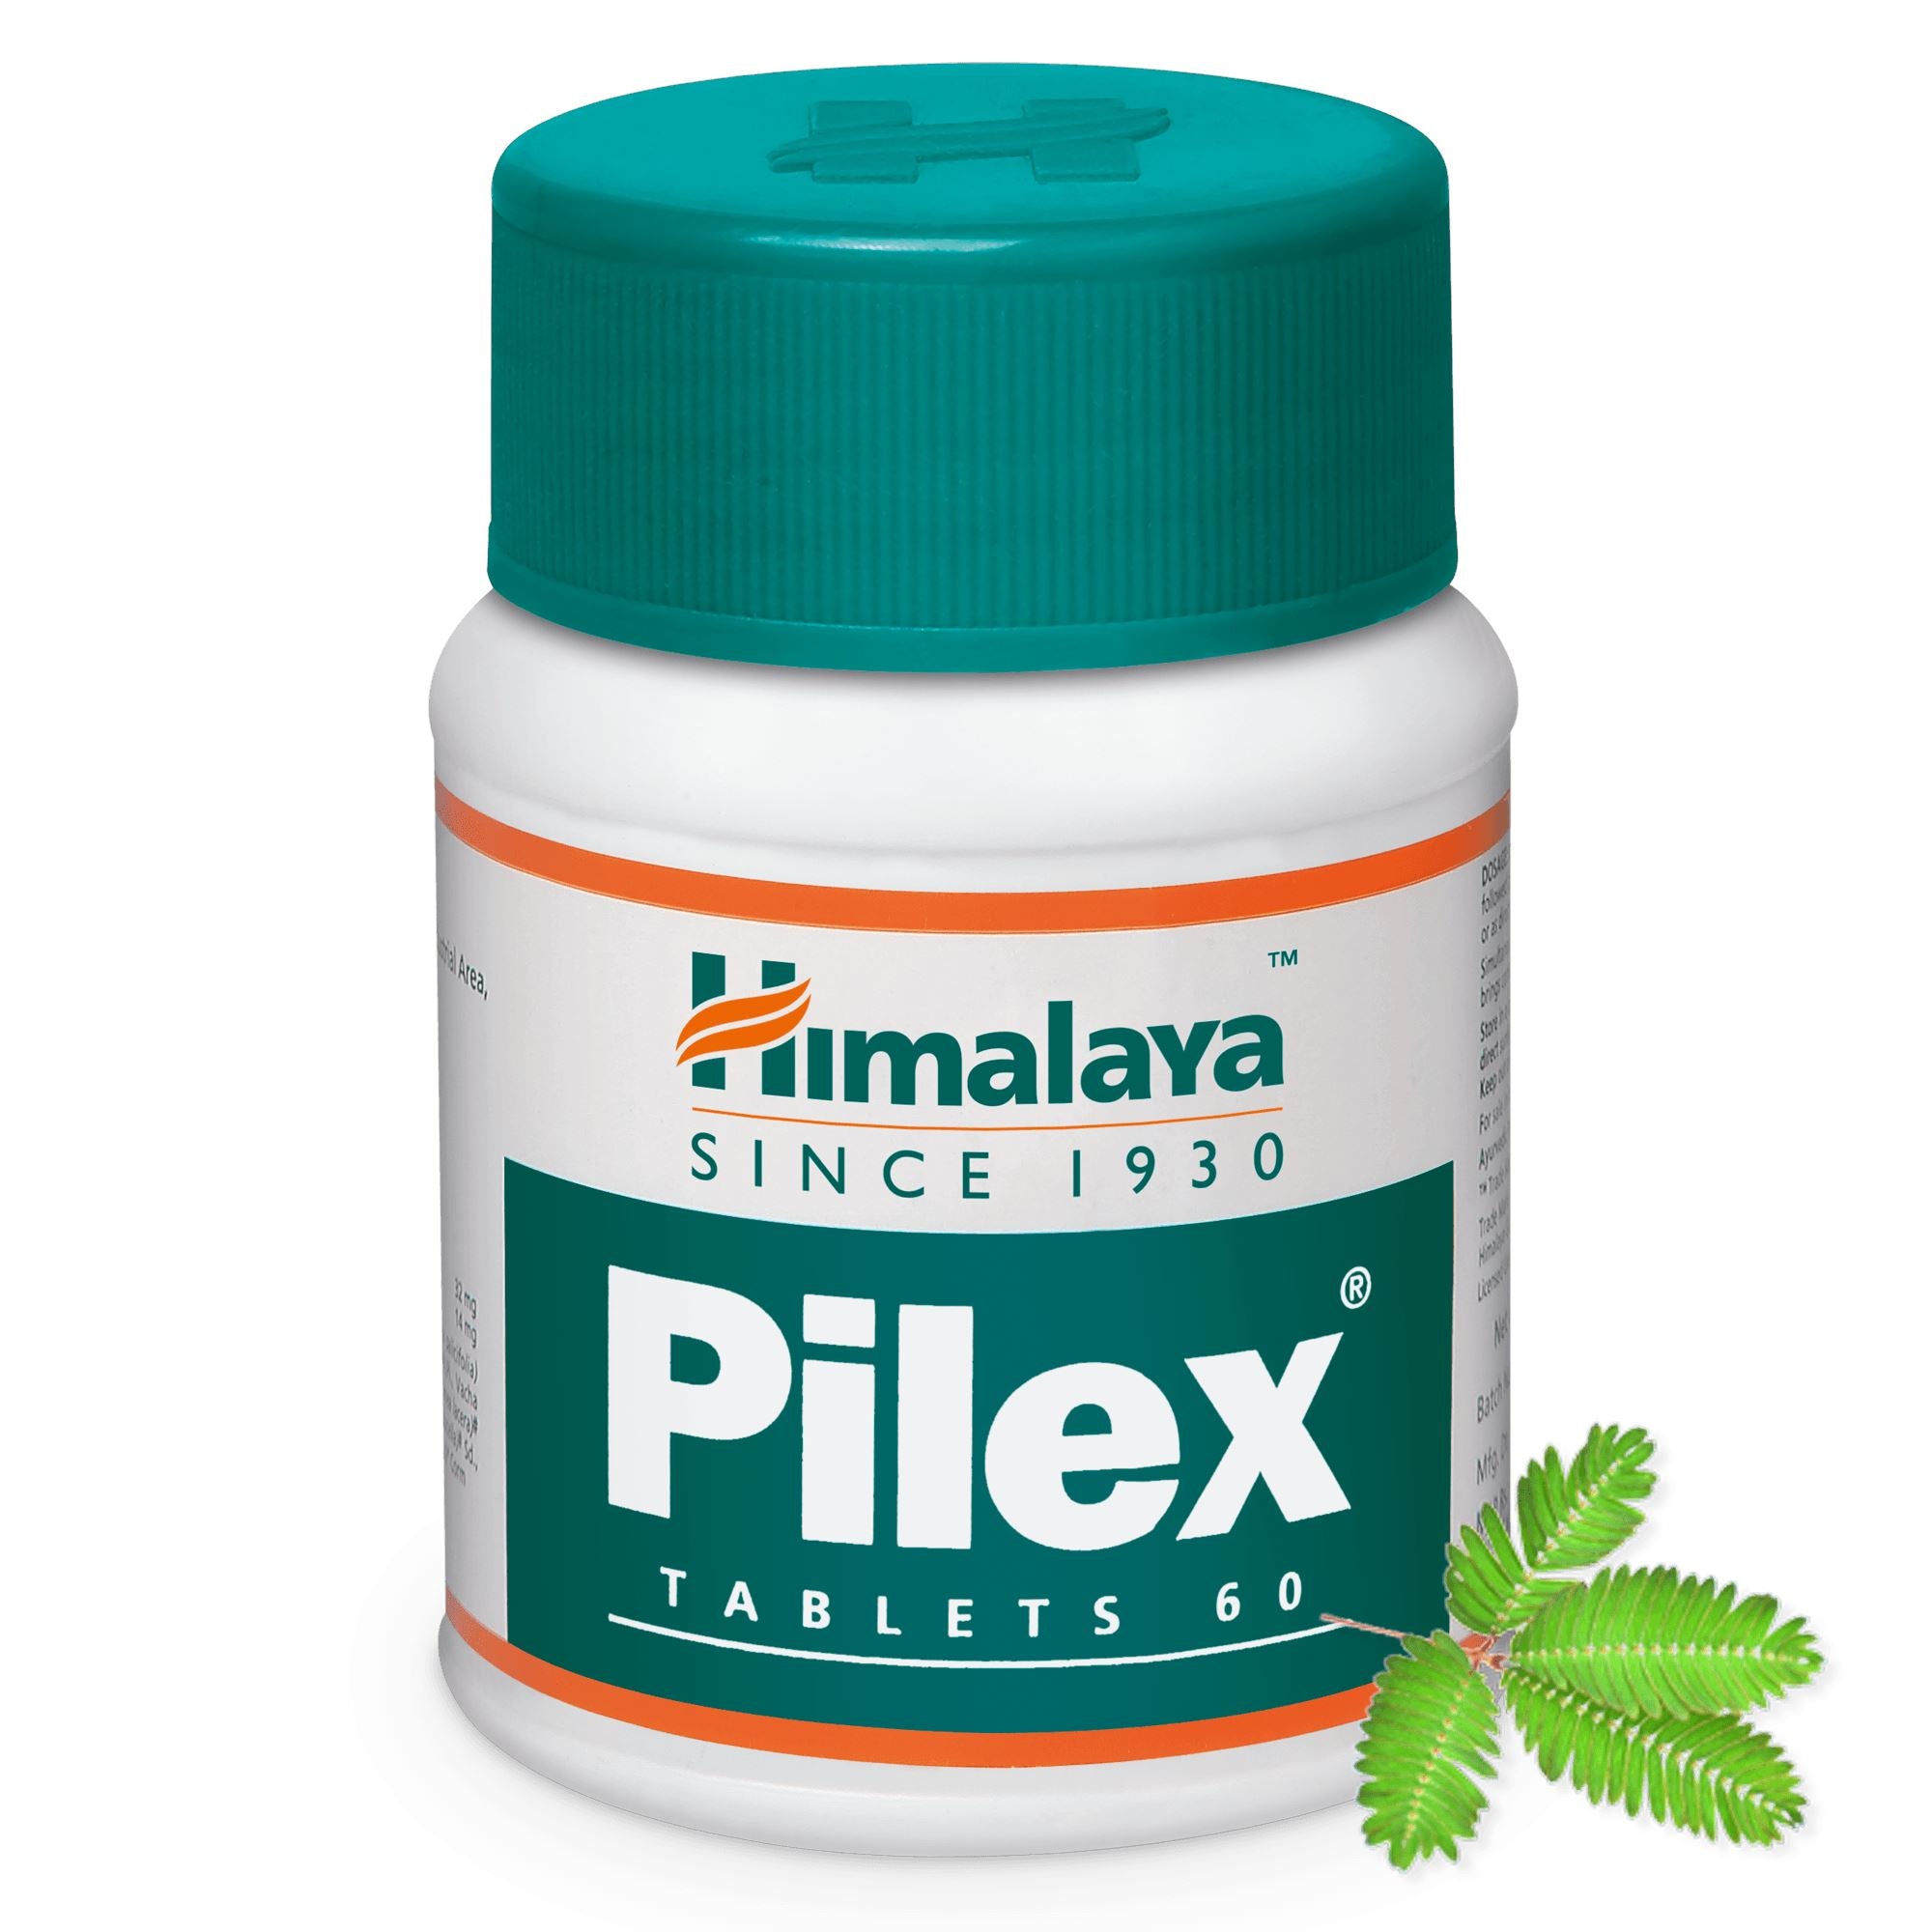 Himalaya Pilex tablet - Helps combat hemarrhoids 